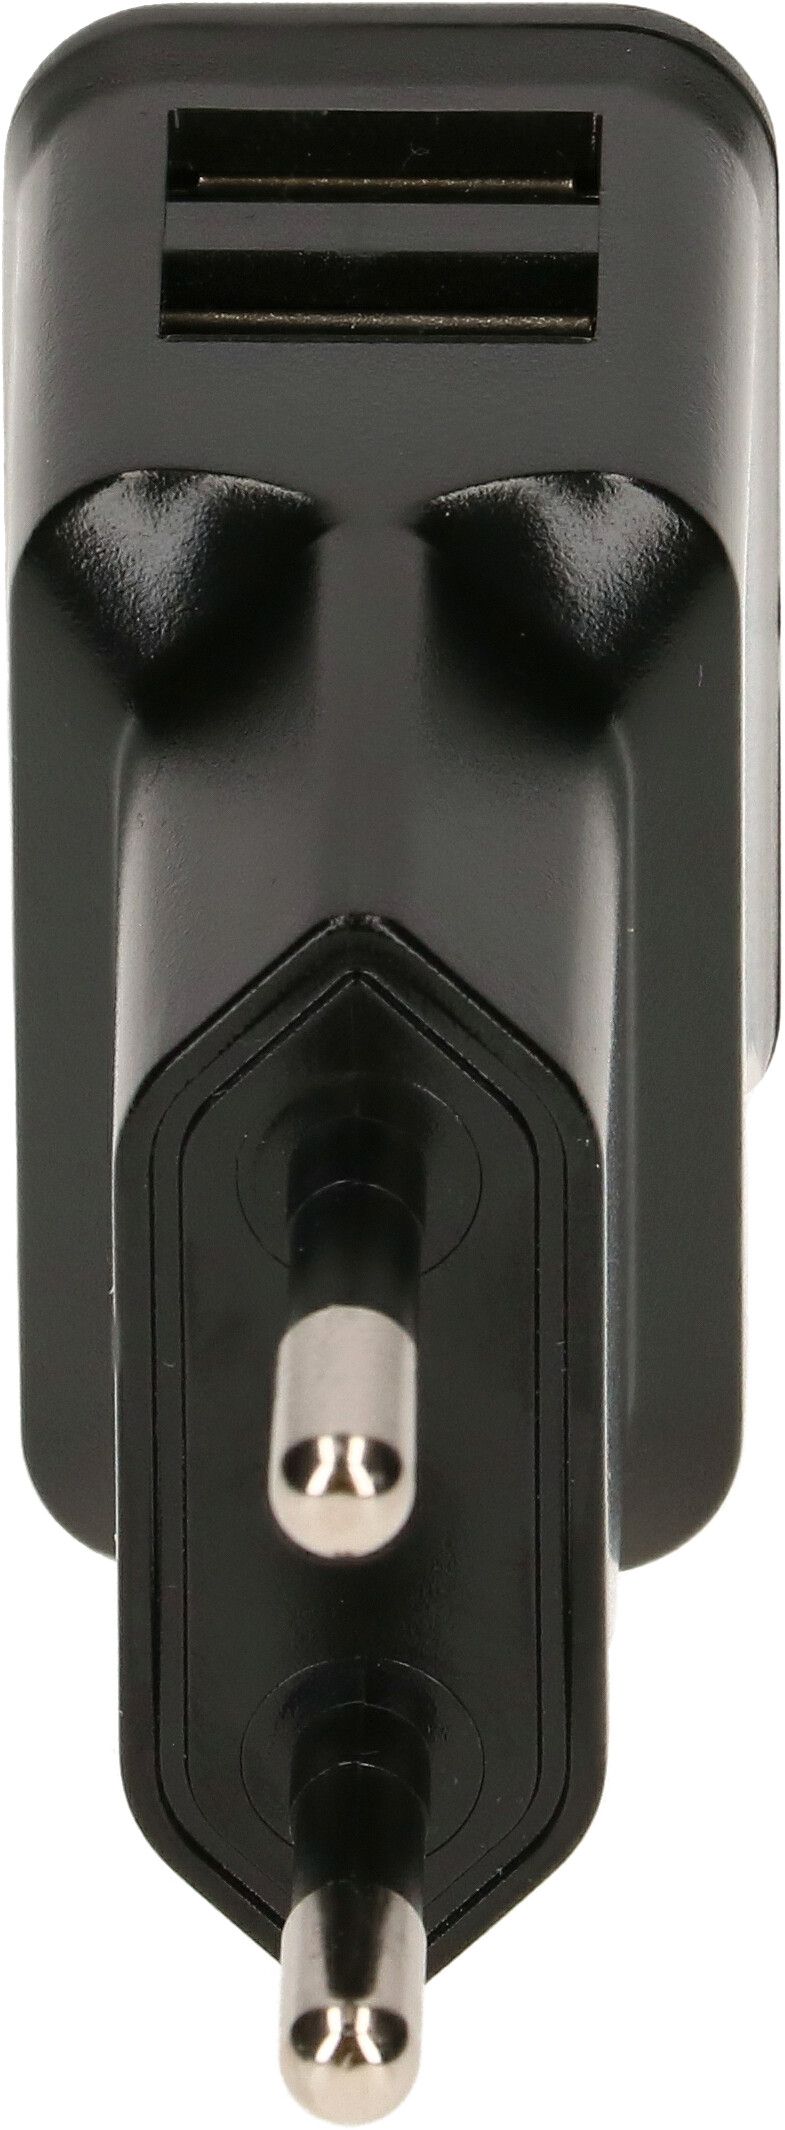 adattatore di ricarica USB 2x USB-A 12W nero